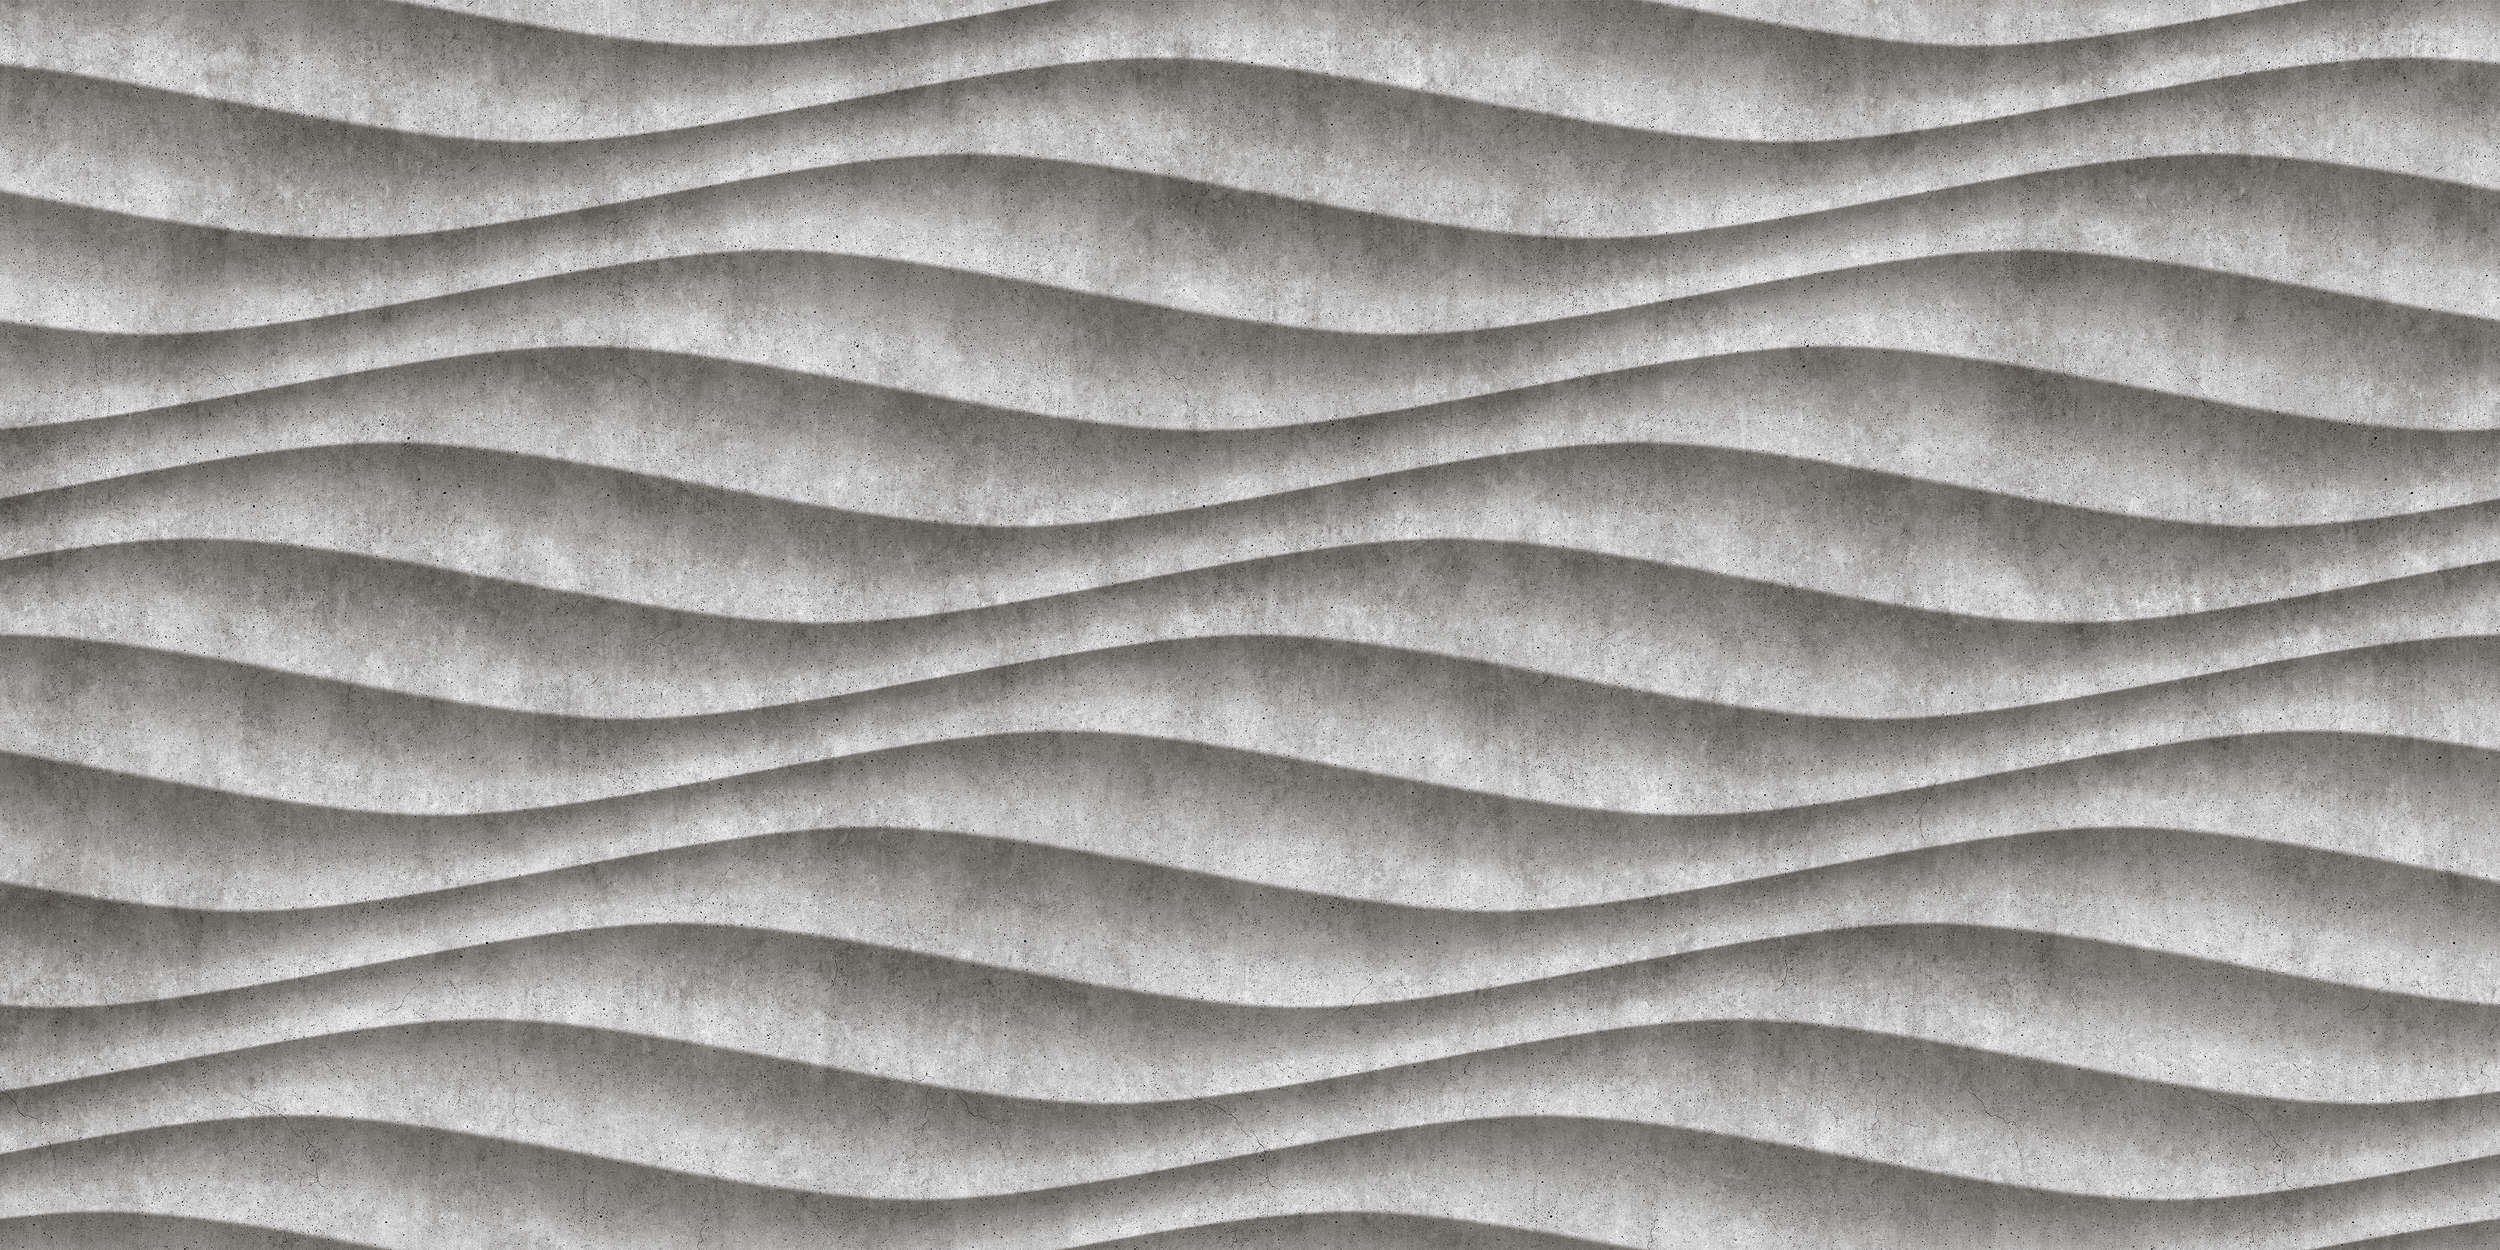             Canyon 2 - Papier peint 3D cool en béton ondulé - gris, noir | Premium intissé lisse
        